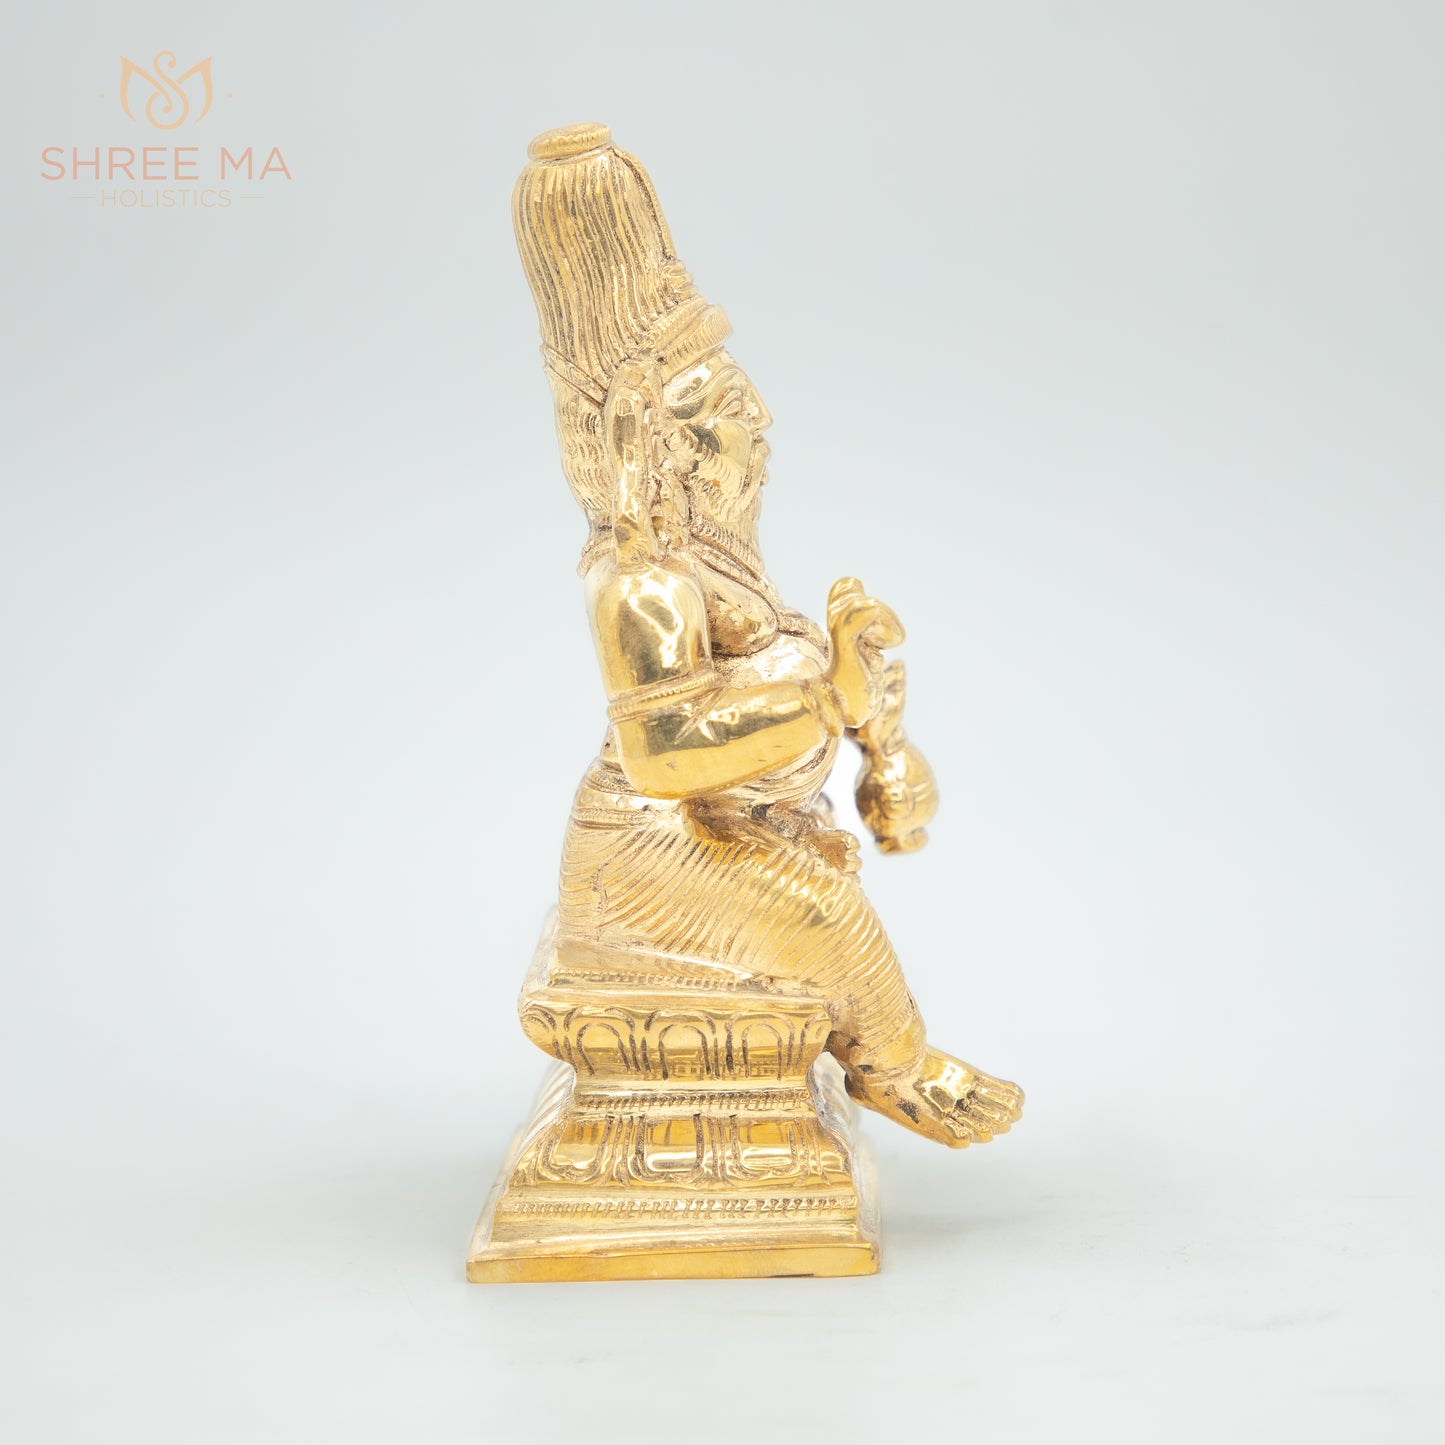 Agasthya Muni 6" inches panchaloha idol